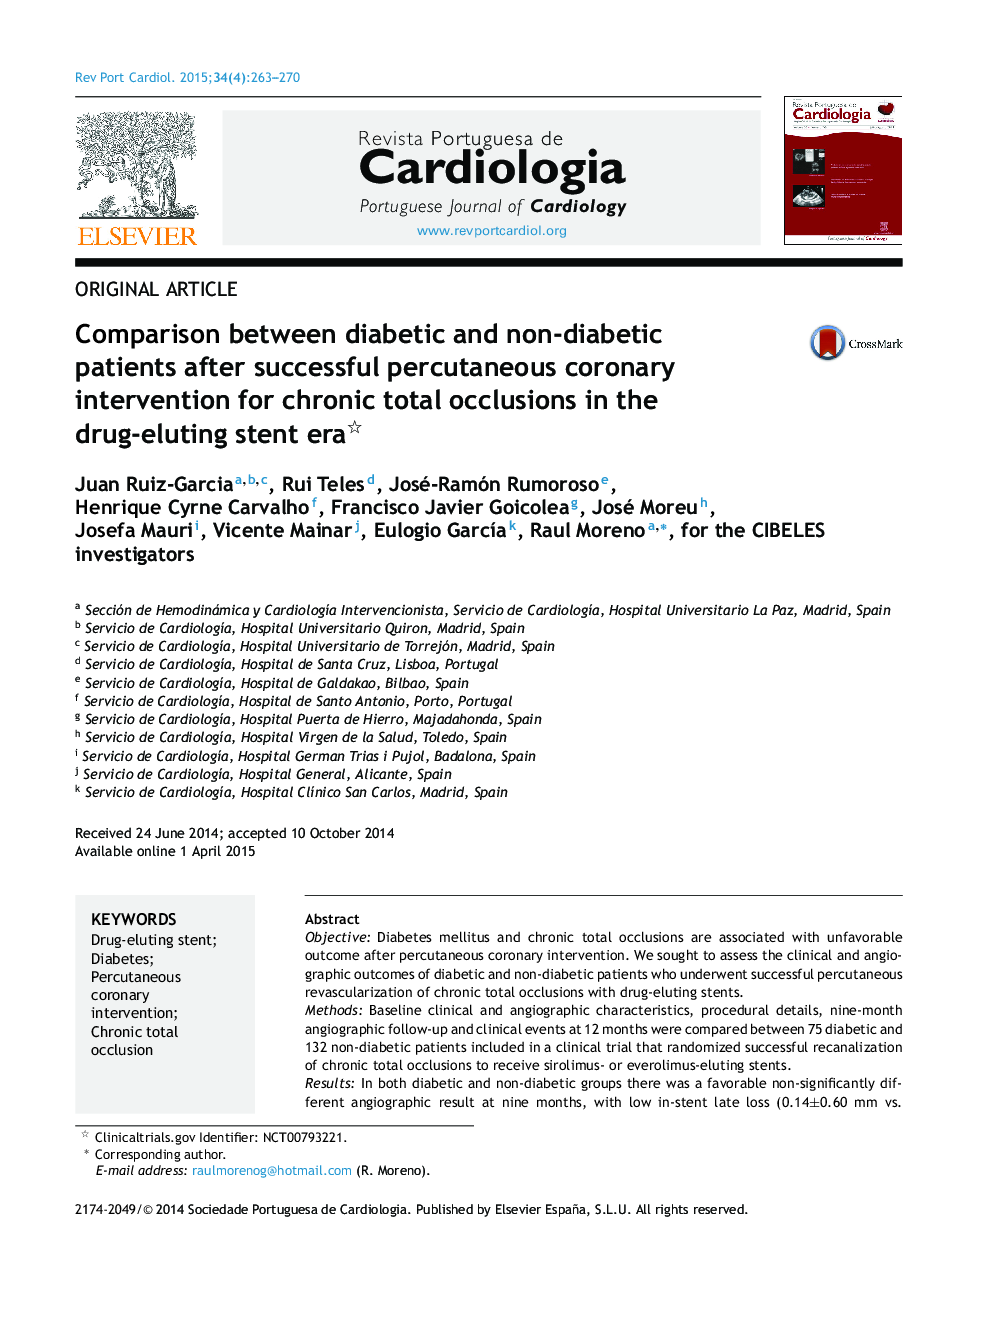 مقایسه بیماران دیابتی و غیر دیابتی پس از مداخله کرونر با استفاده از مداخلات کرونر در پیشگیری از عوارض مزمن کل در دوره استنت سمیت درمانی 